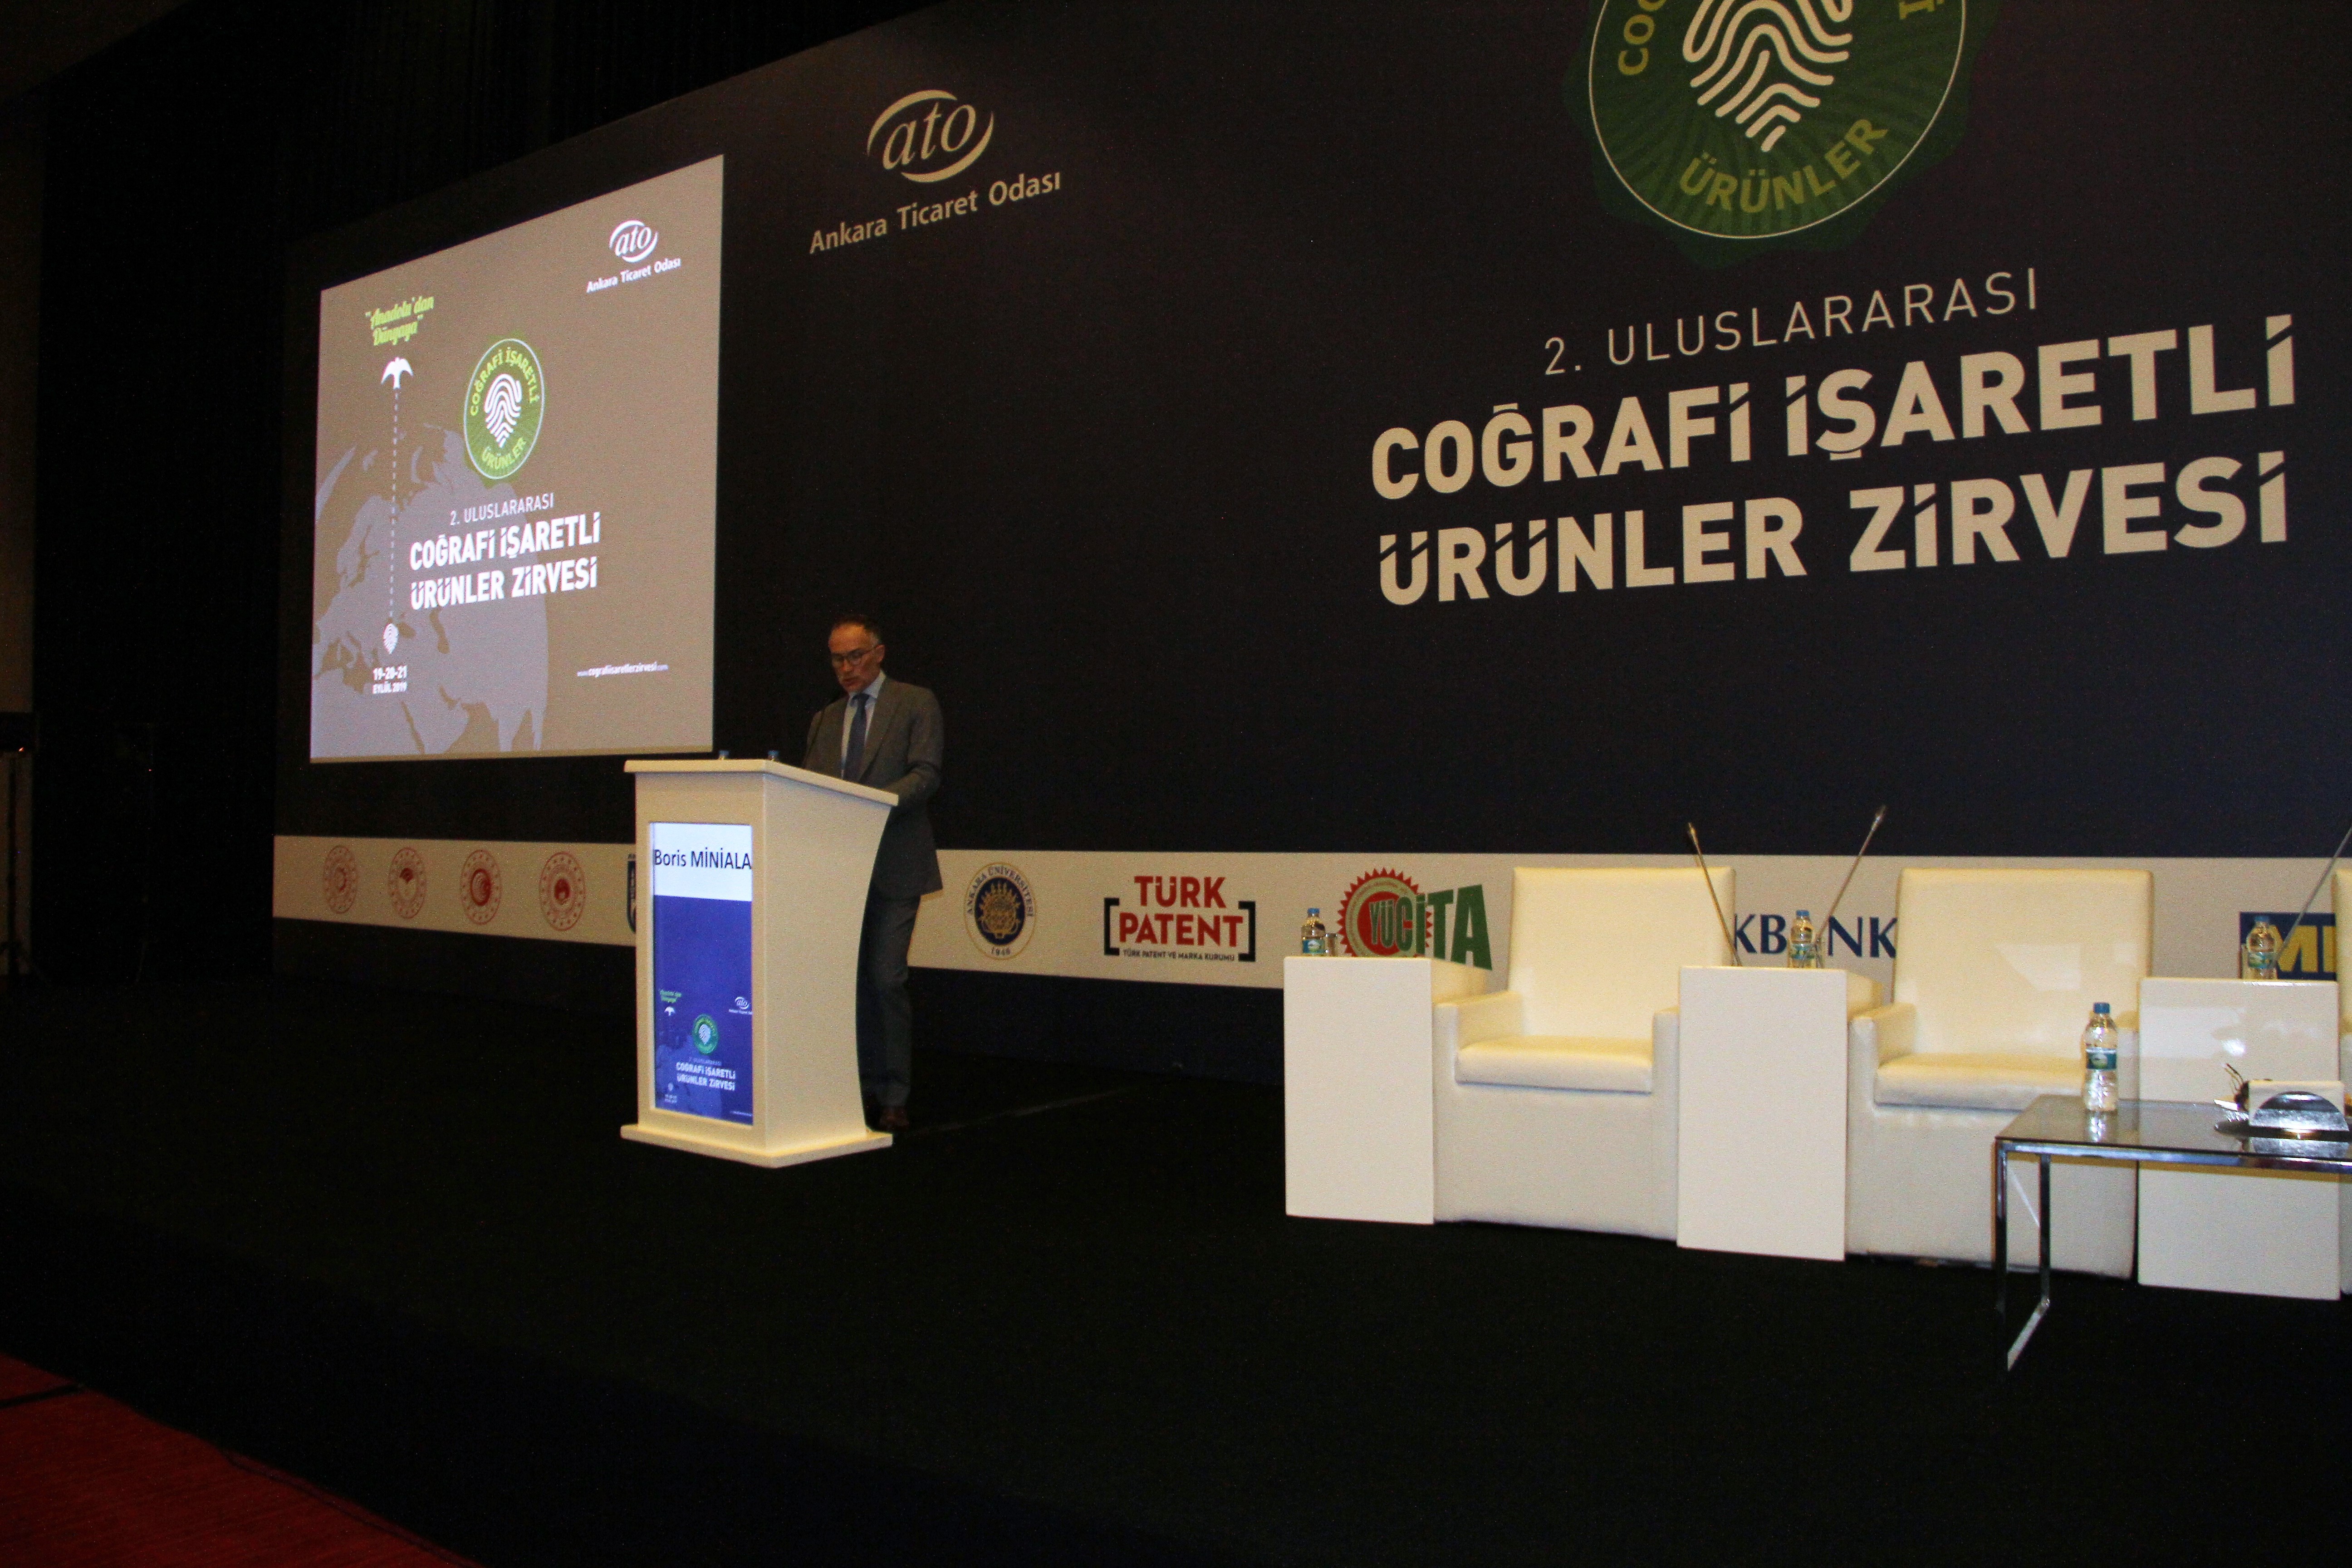 Uluslararası Coğrafi İşaretli Ürünler Zirvesi, Metro Türkiye’nin sponsorluğunda gerçekleşti-726 etkinliği yapıldı